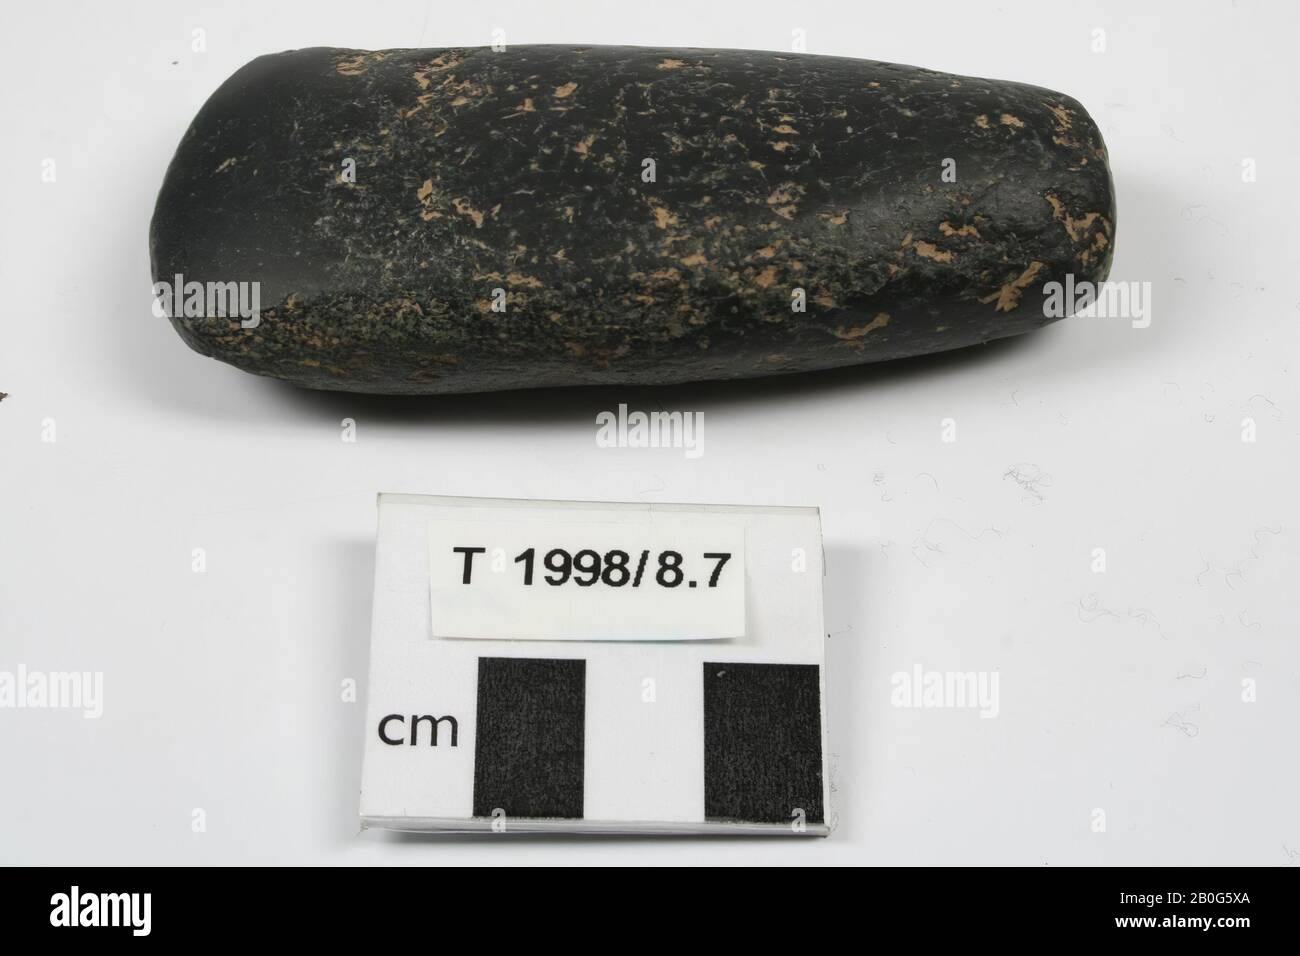 Ascia di pietra. Neolitico., Inghilterra, Cornovaglia., Ax, pietra, 9,8 x 4,2 x 2,3 cm, Età del Bronzo, Inghilterra Foto Stock